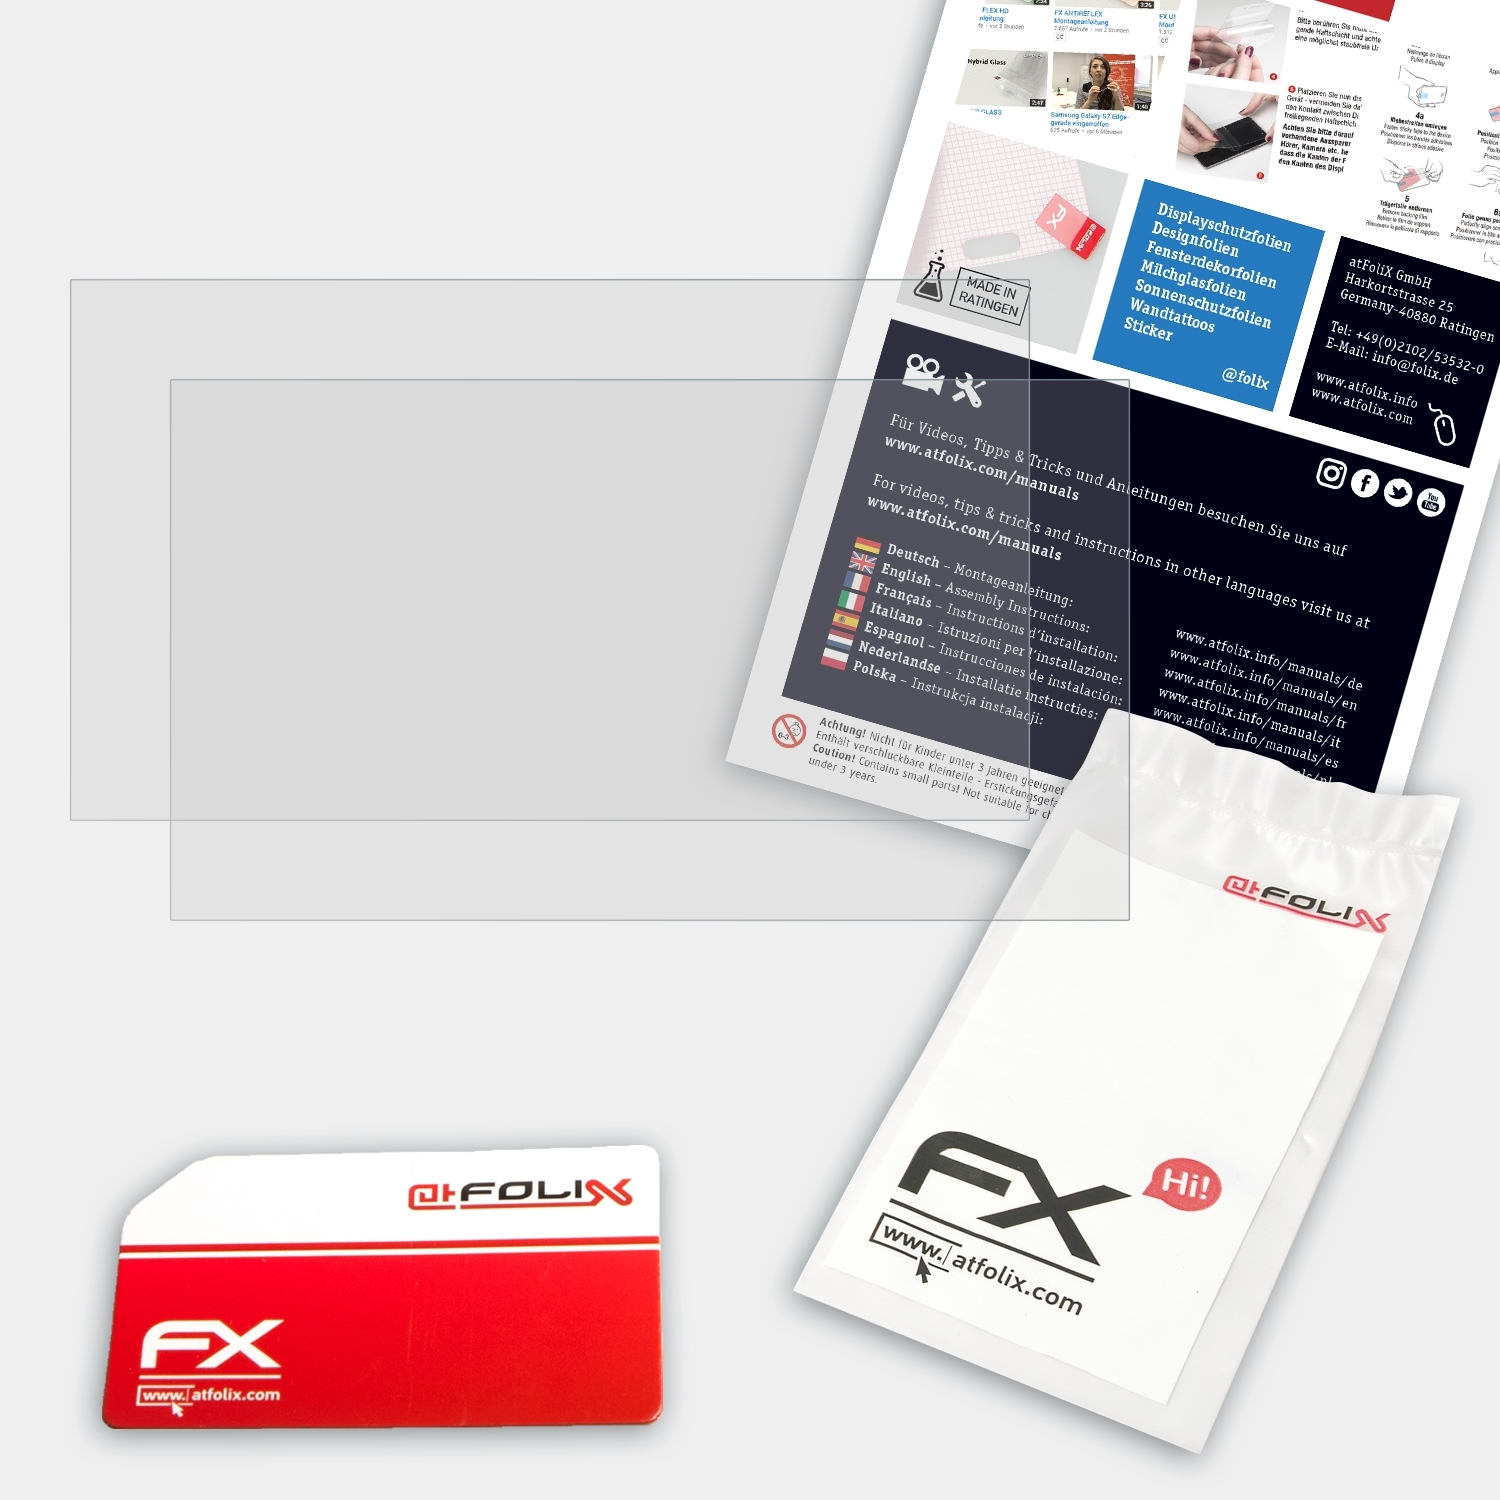 FX-Antireflex ATFOLIX 2x T470) Lenovo Displayschutz(für ThinkPad